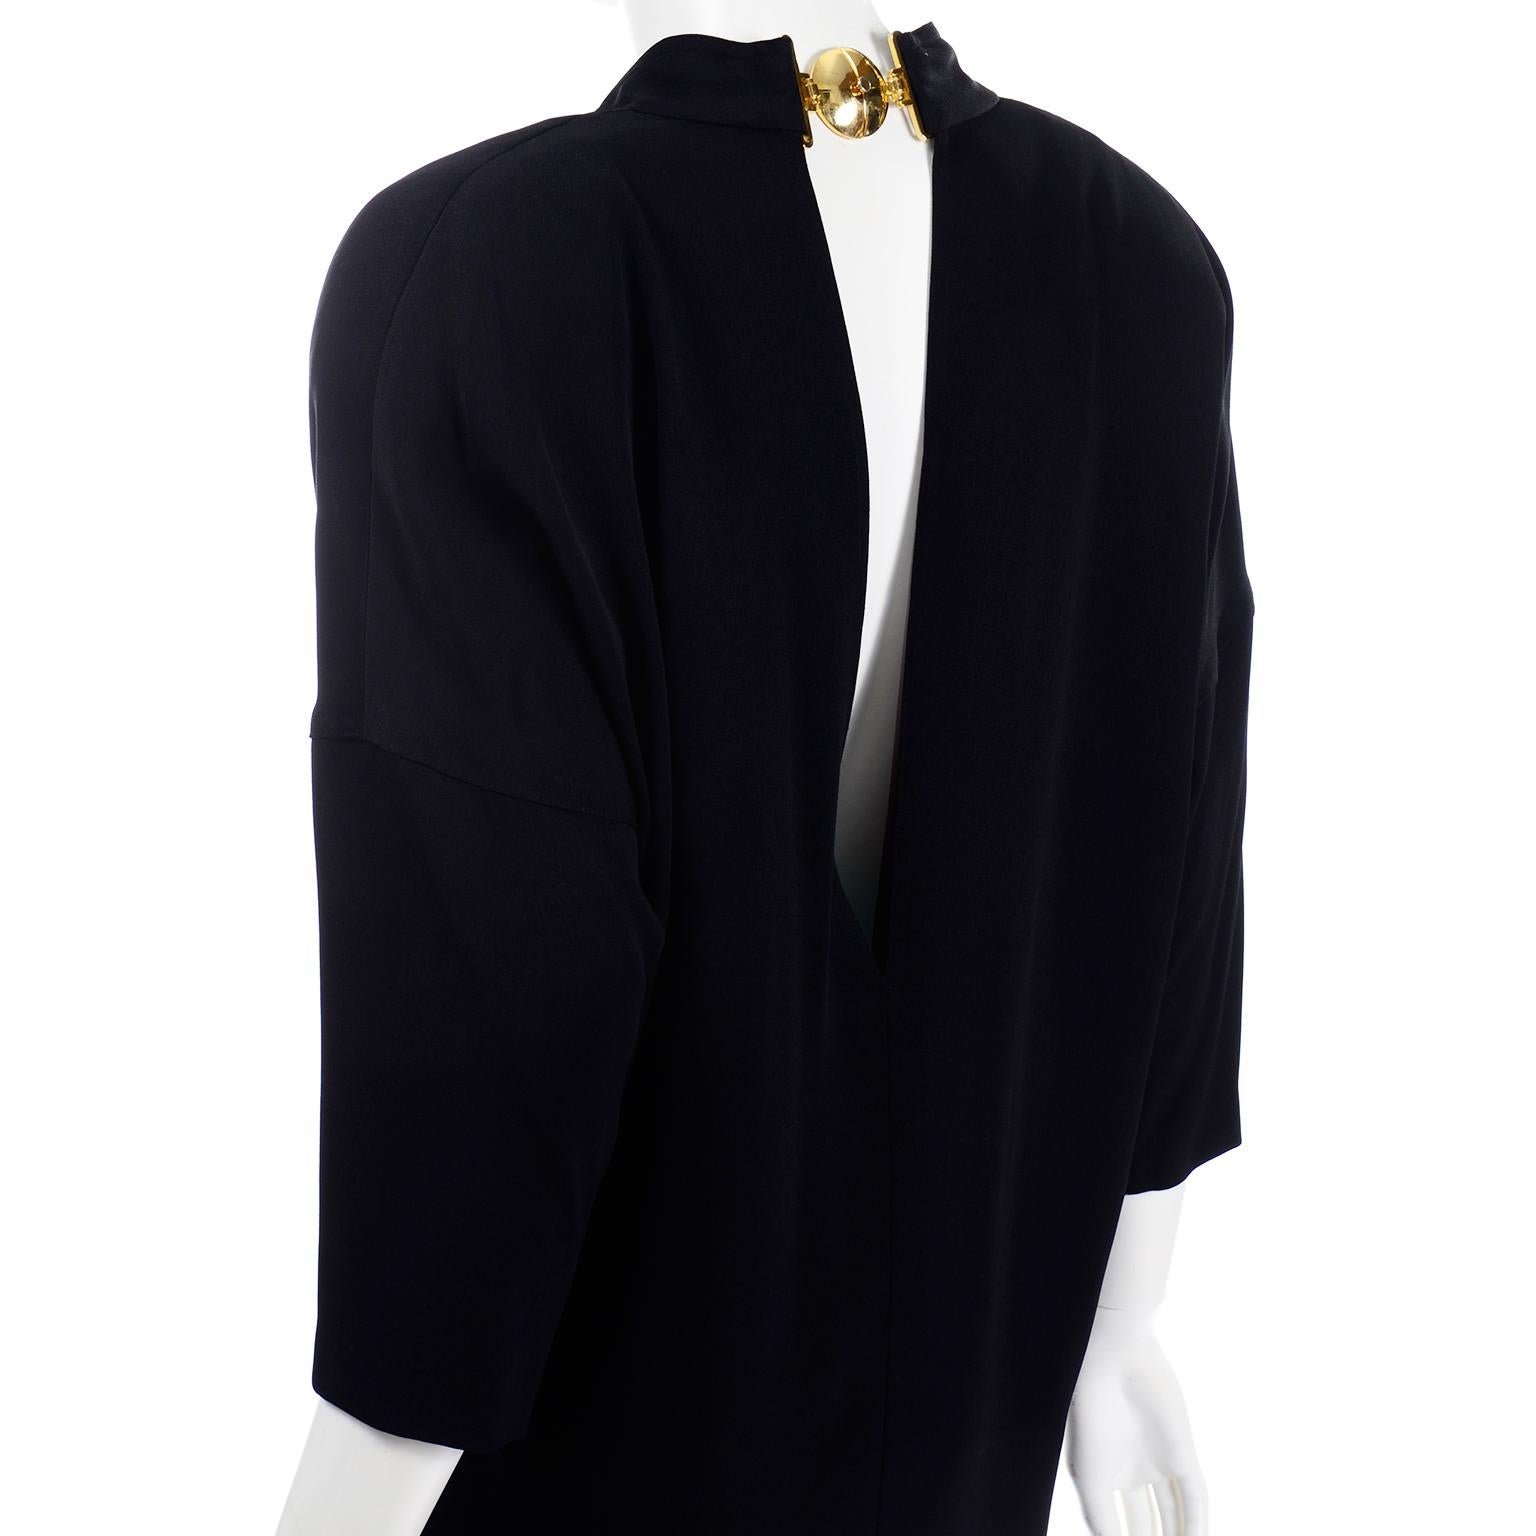 1980s Gianfranco Ferre Vintage Black Crepe Dress with Low V Back & Gold Buckle For Sale 2